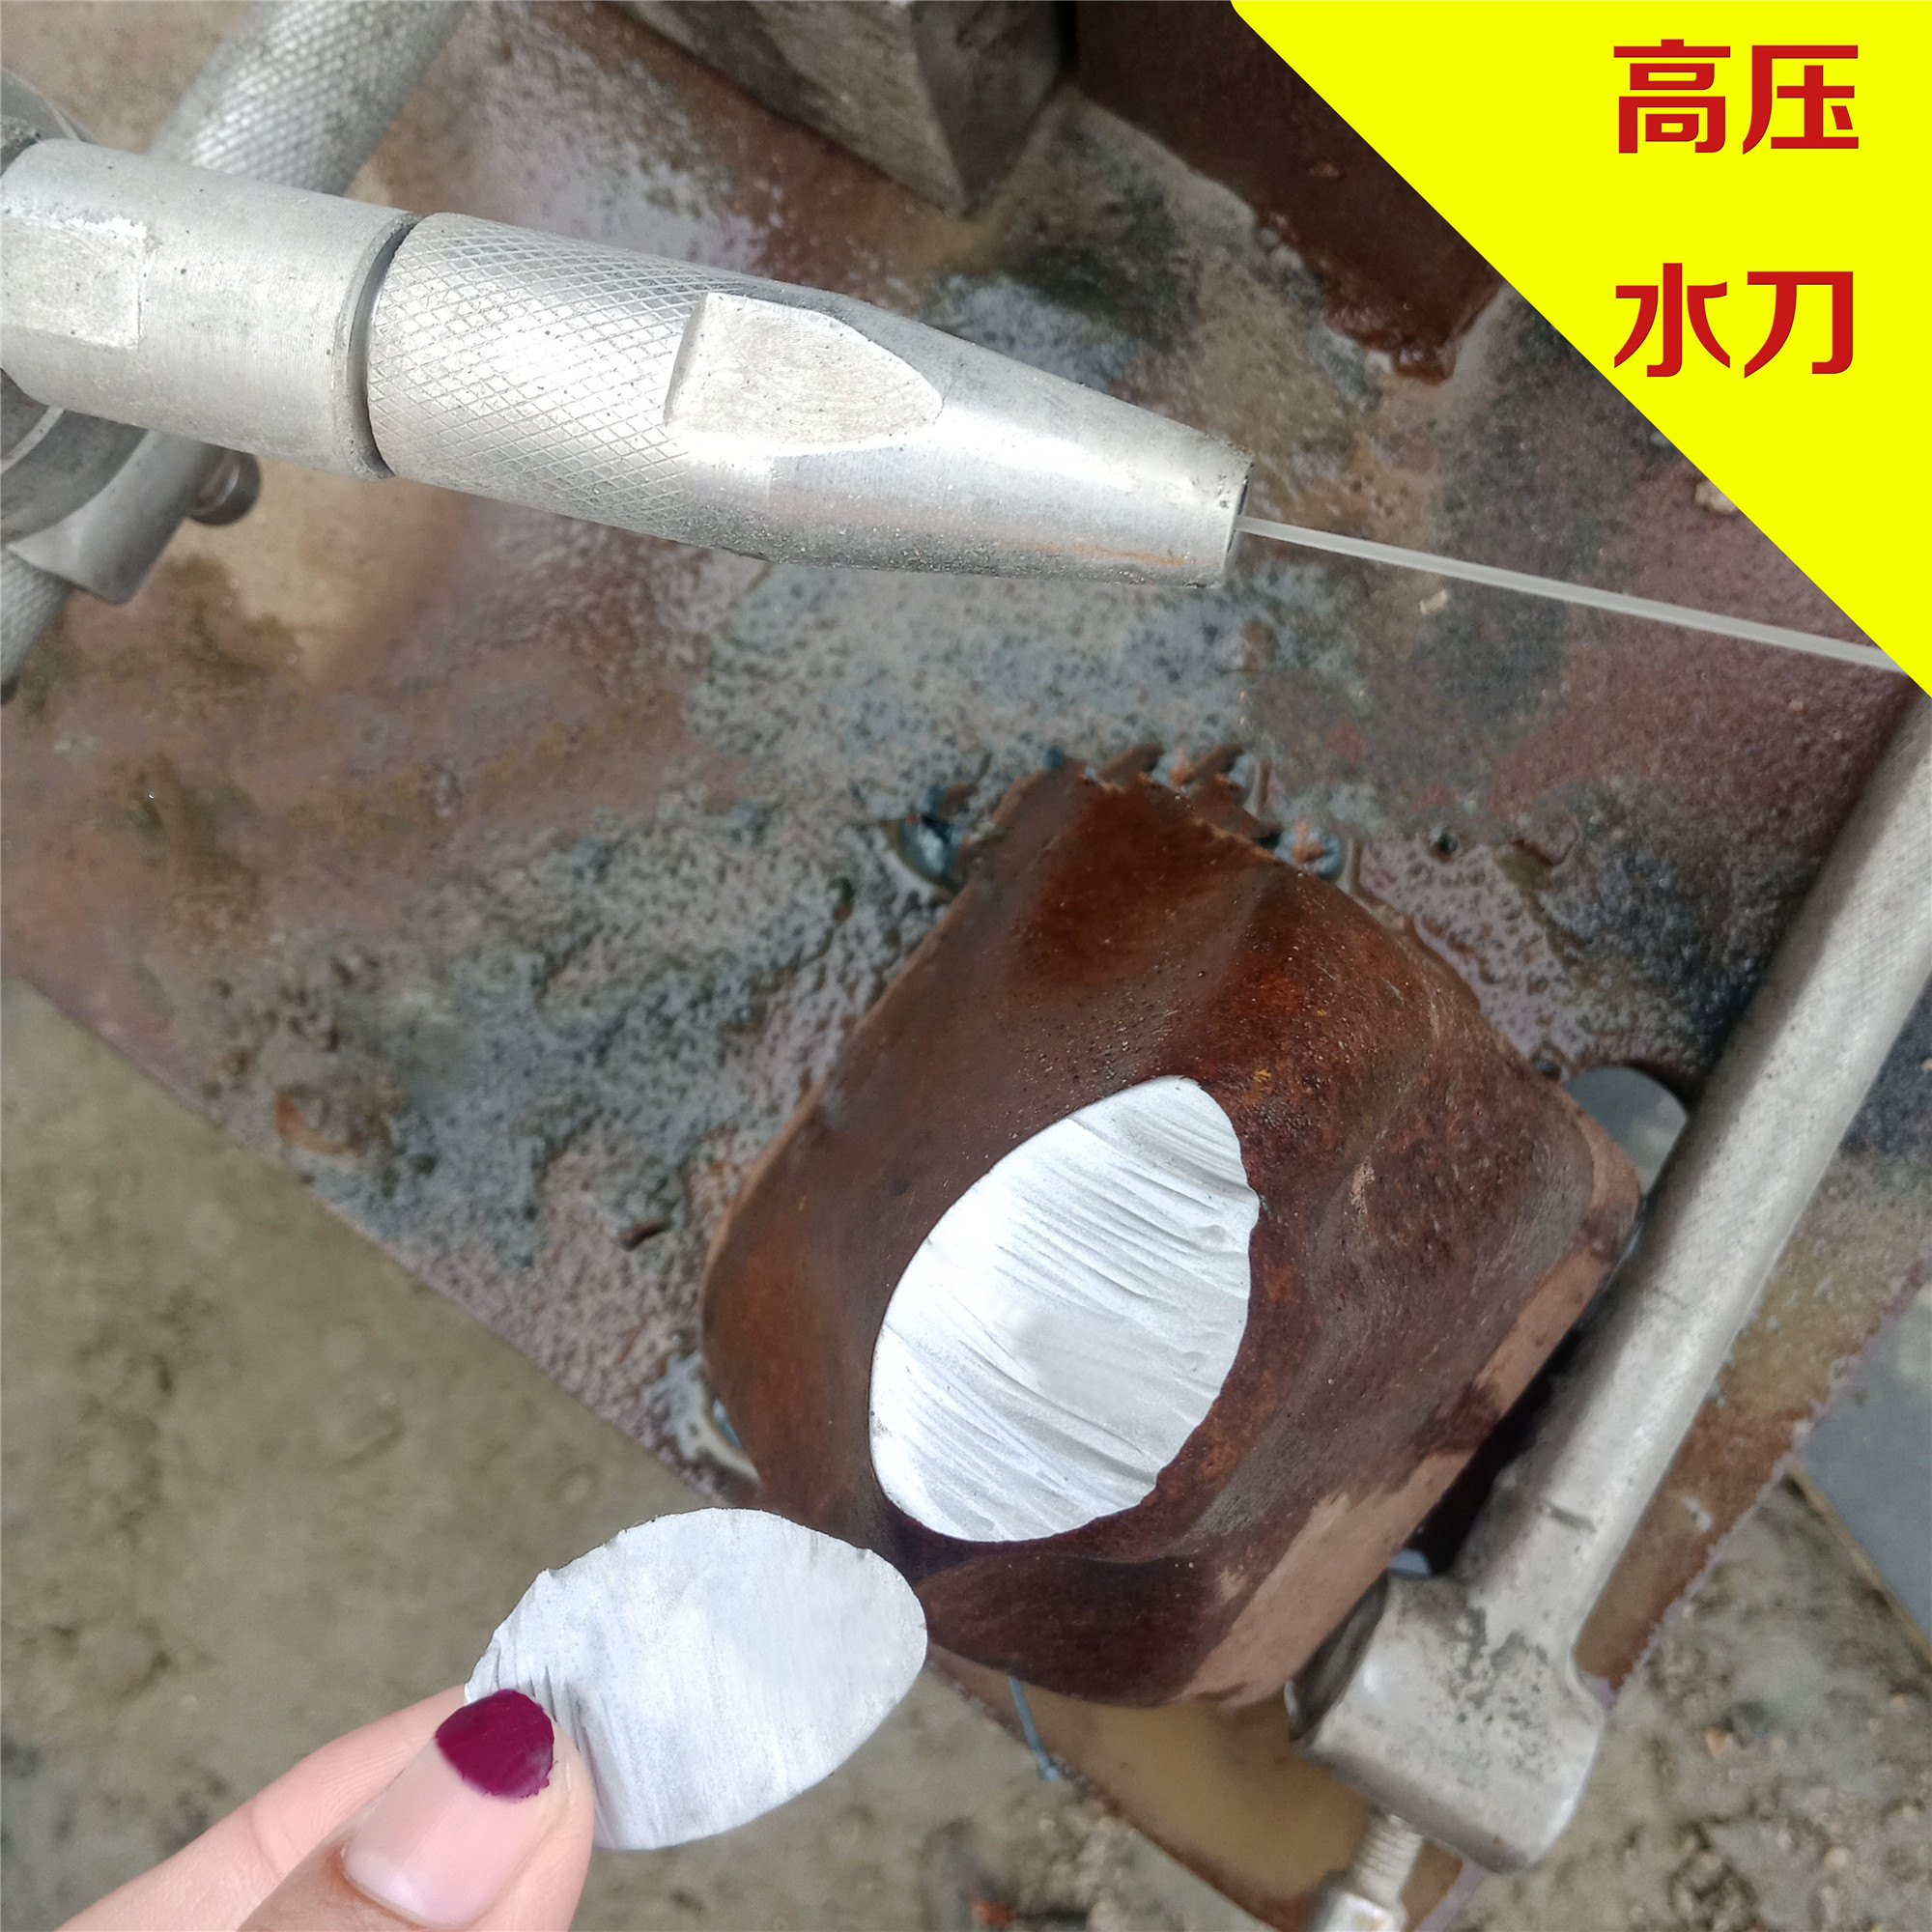 黑龙江化工专用水刀 化工专用水切割机租赁新品上市